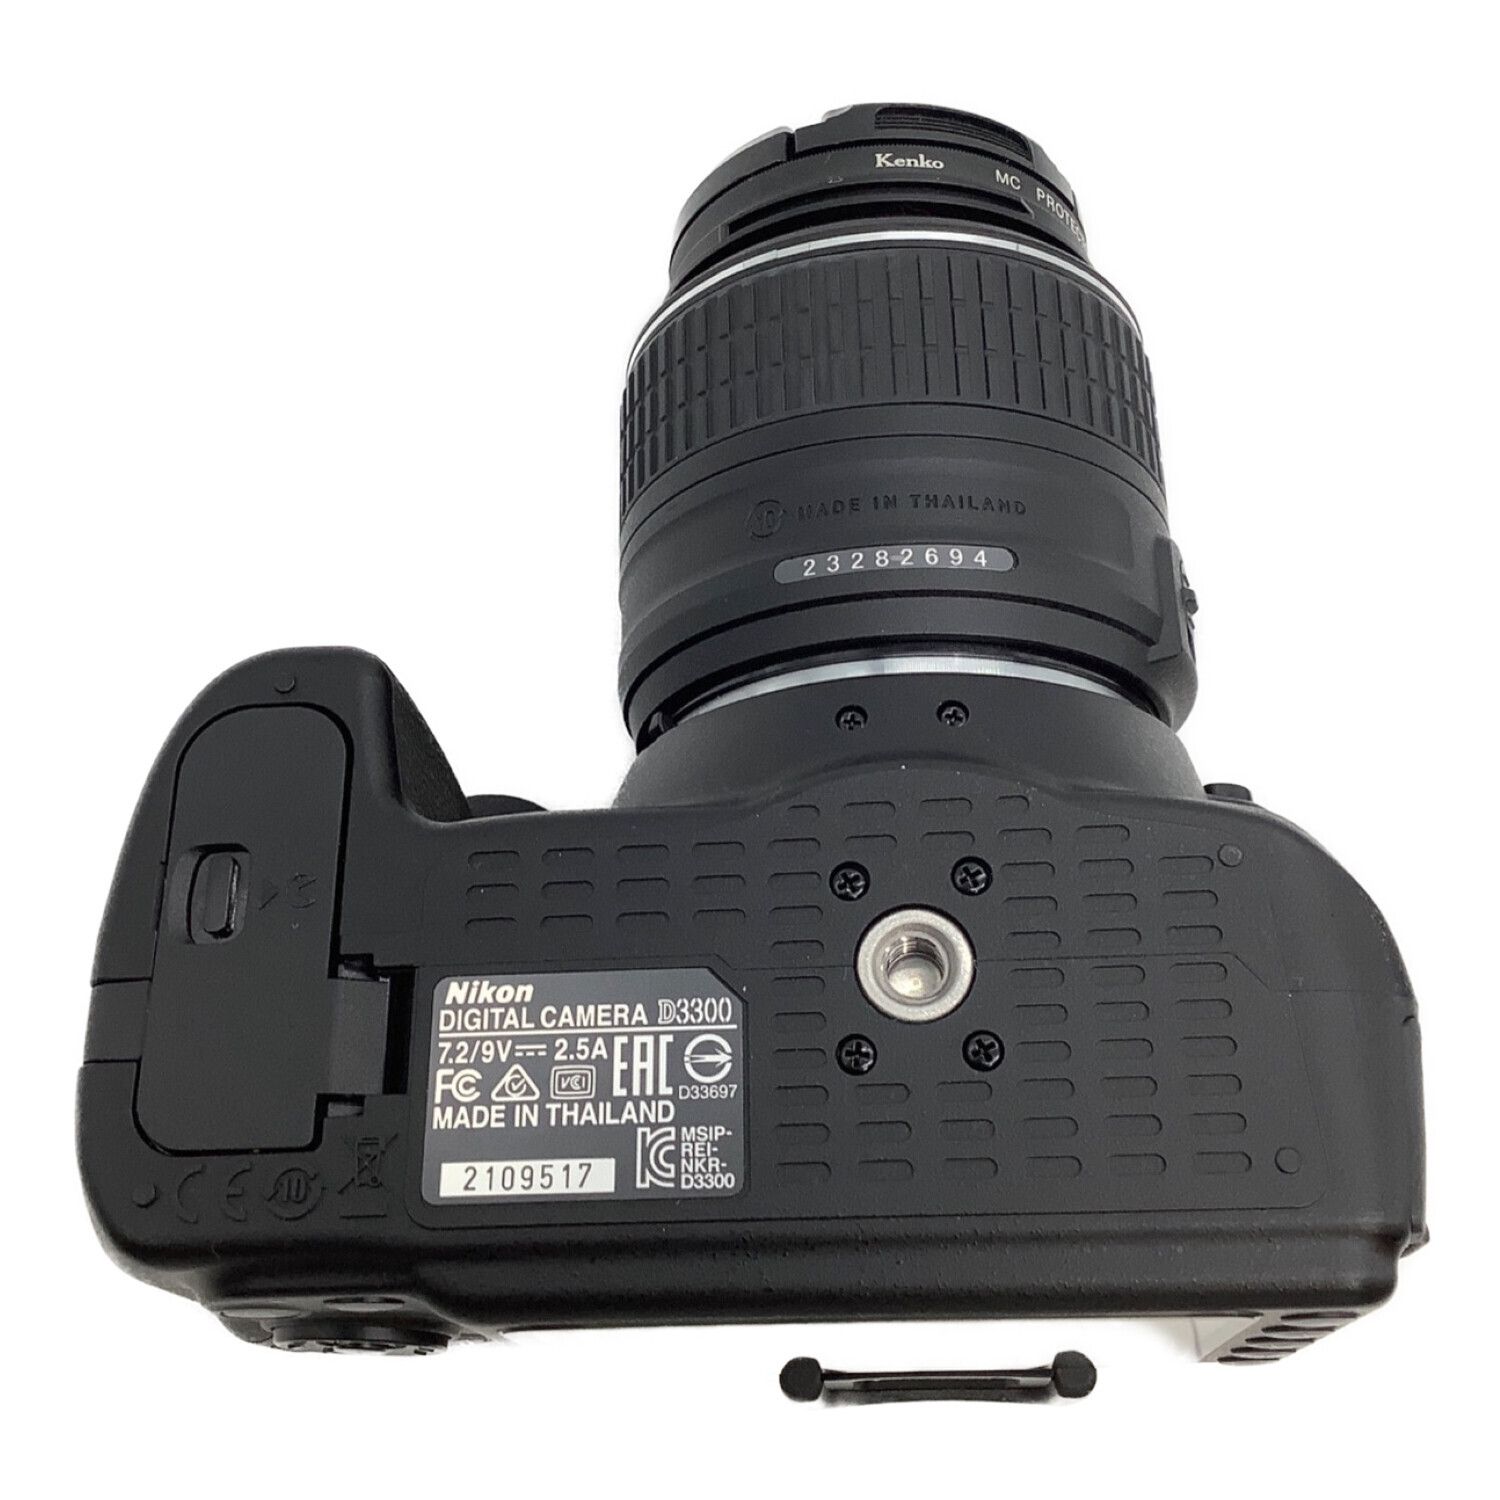 Nikon (ニコン) デジタル一眼レフカメラ D3300ダブルズームキット 2416 